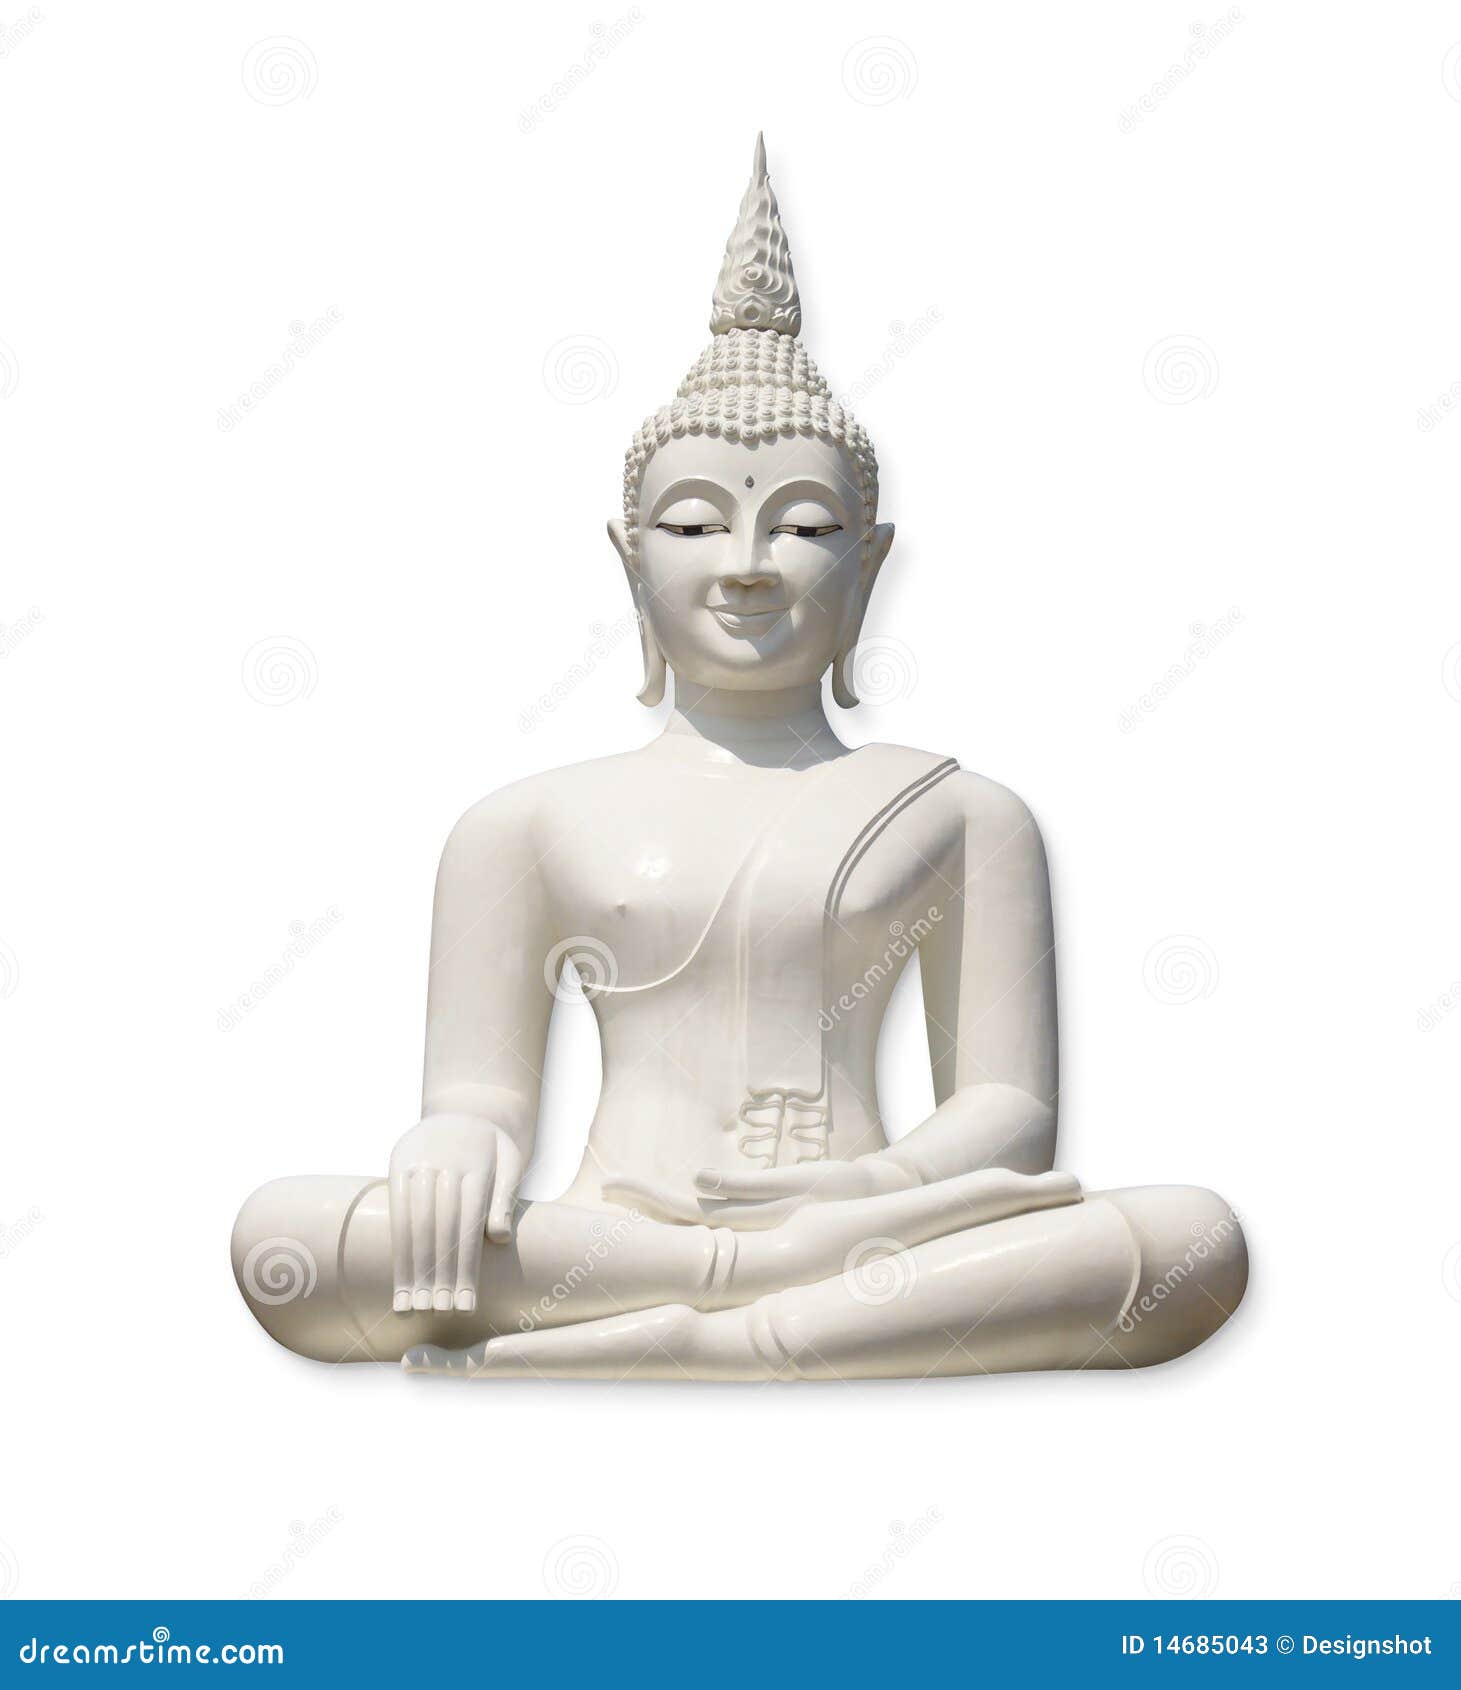 White Buddha Statue Stock Photography | CartoonDealer.com #76443992